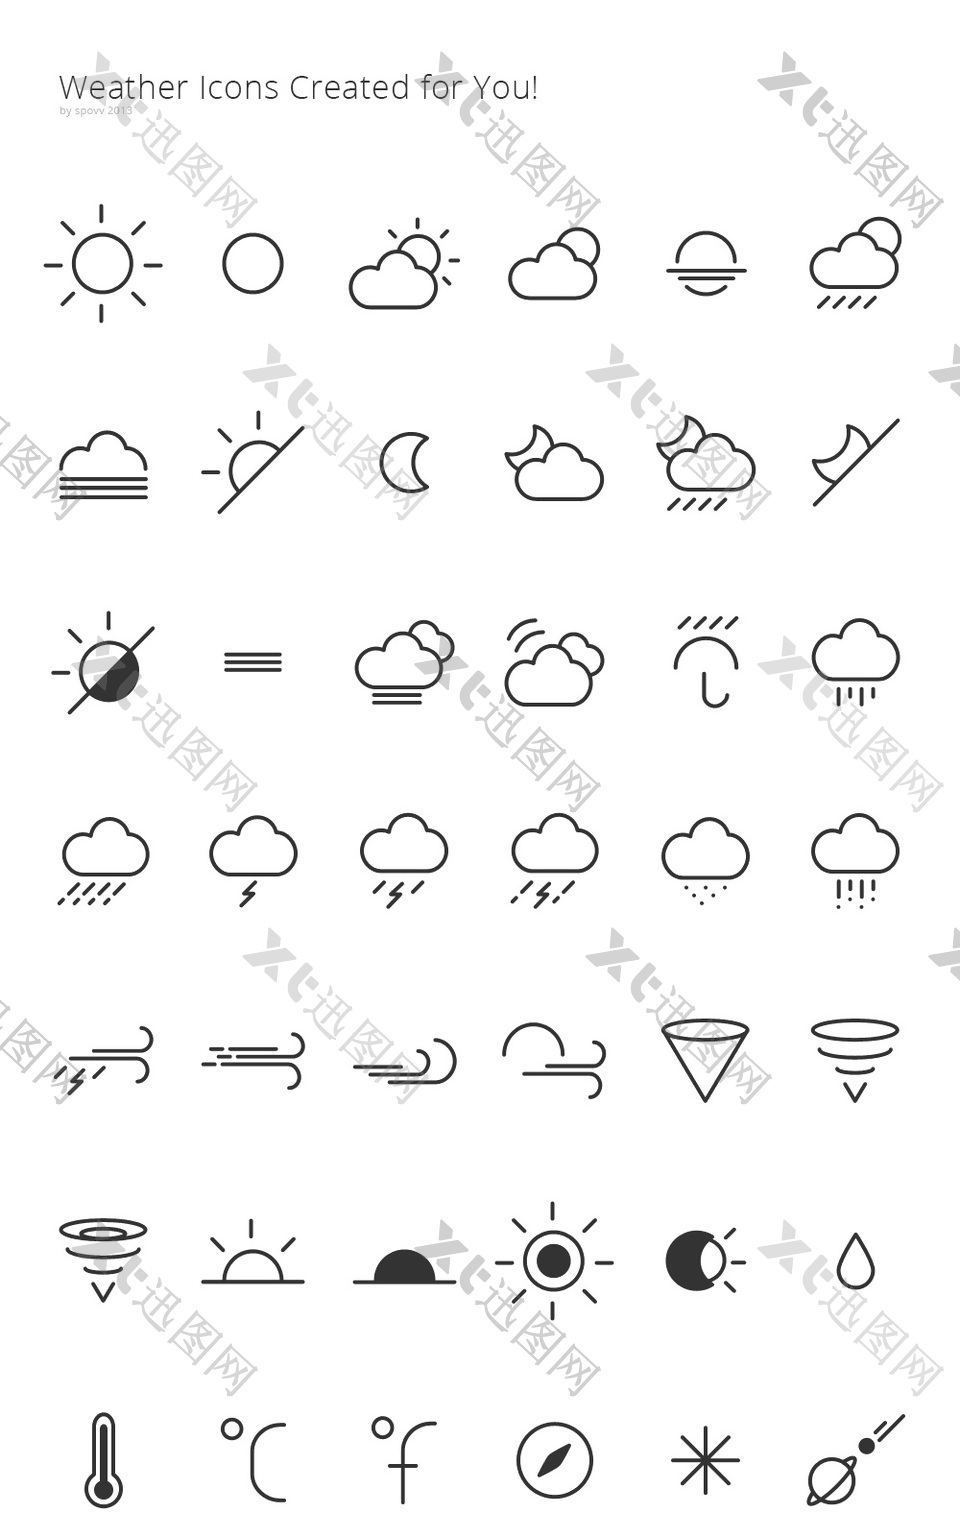 简约的天气符号和图标